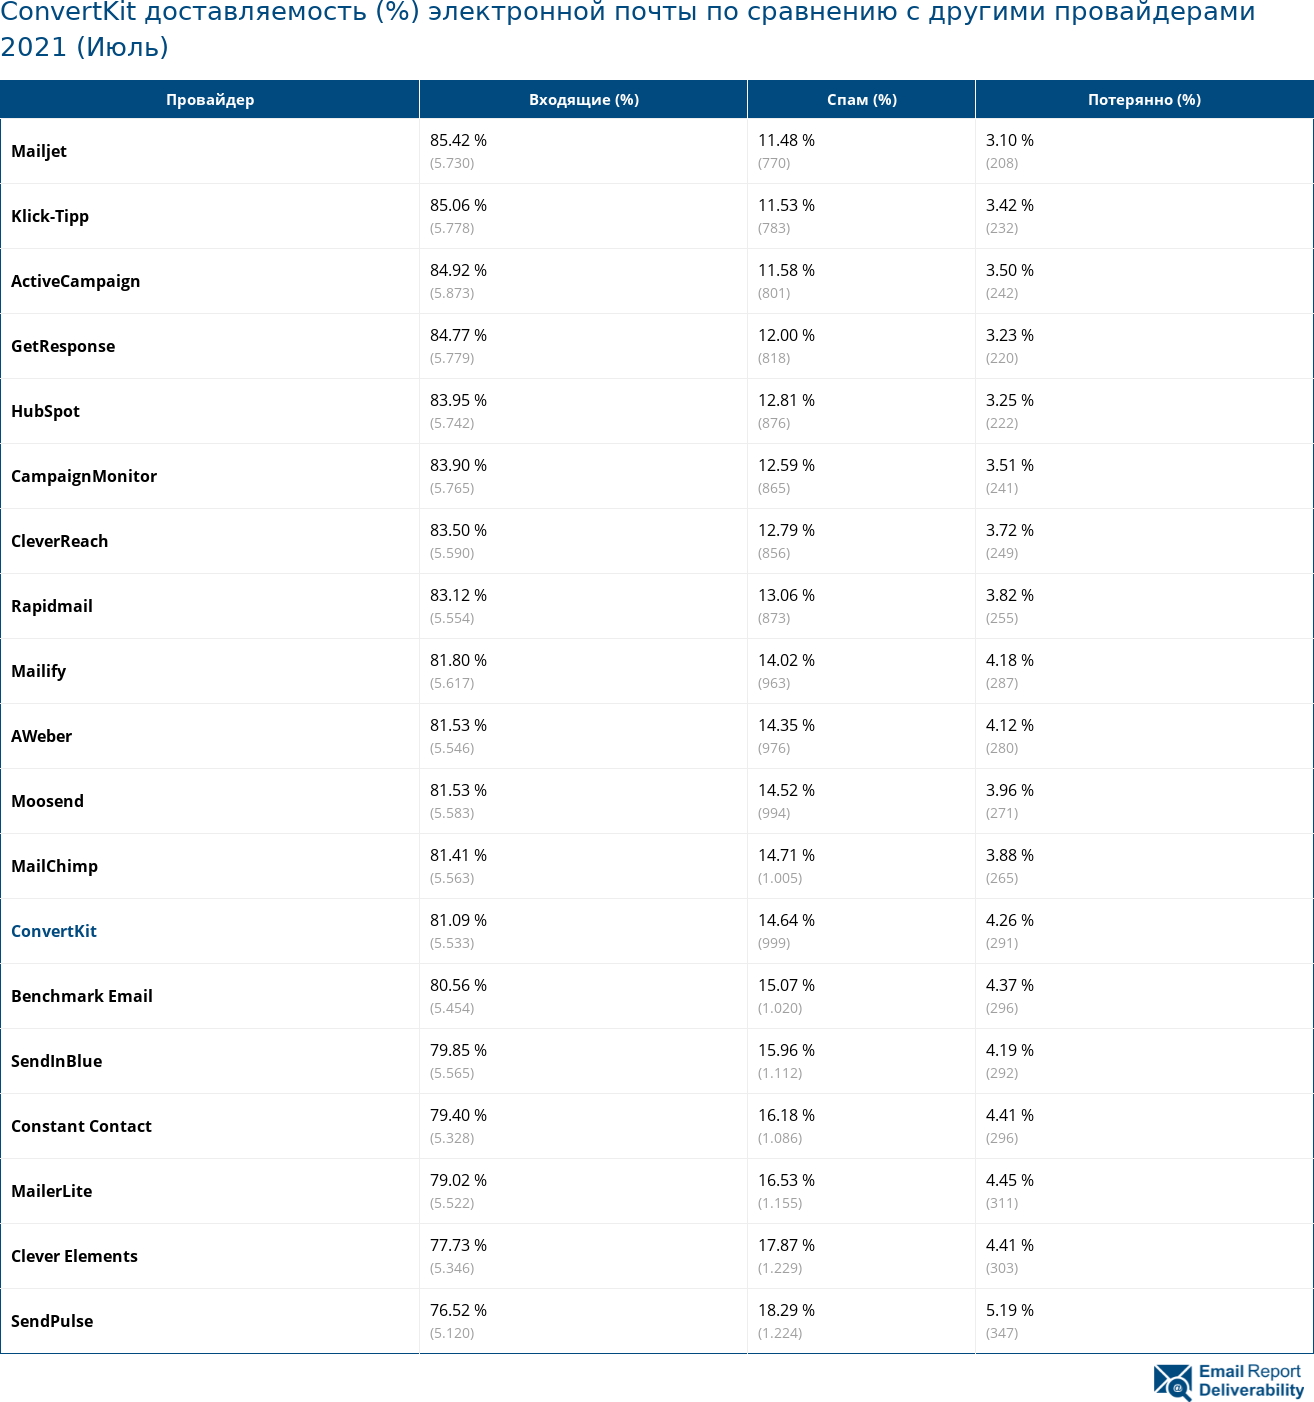 ConvertKit доставляемость (%) электронной почты по сравнению с другими провайдерами 2021 (Июль)